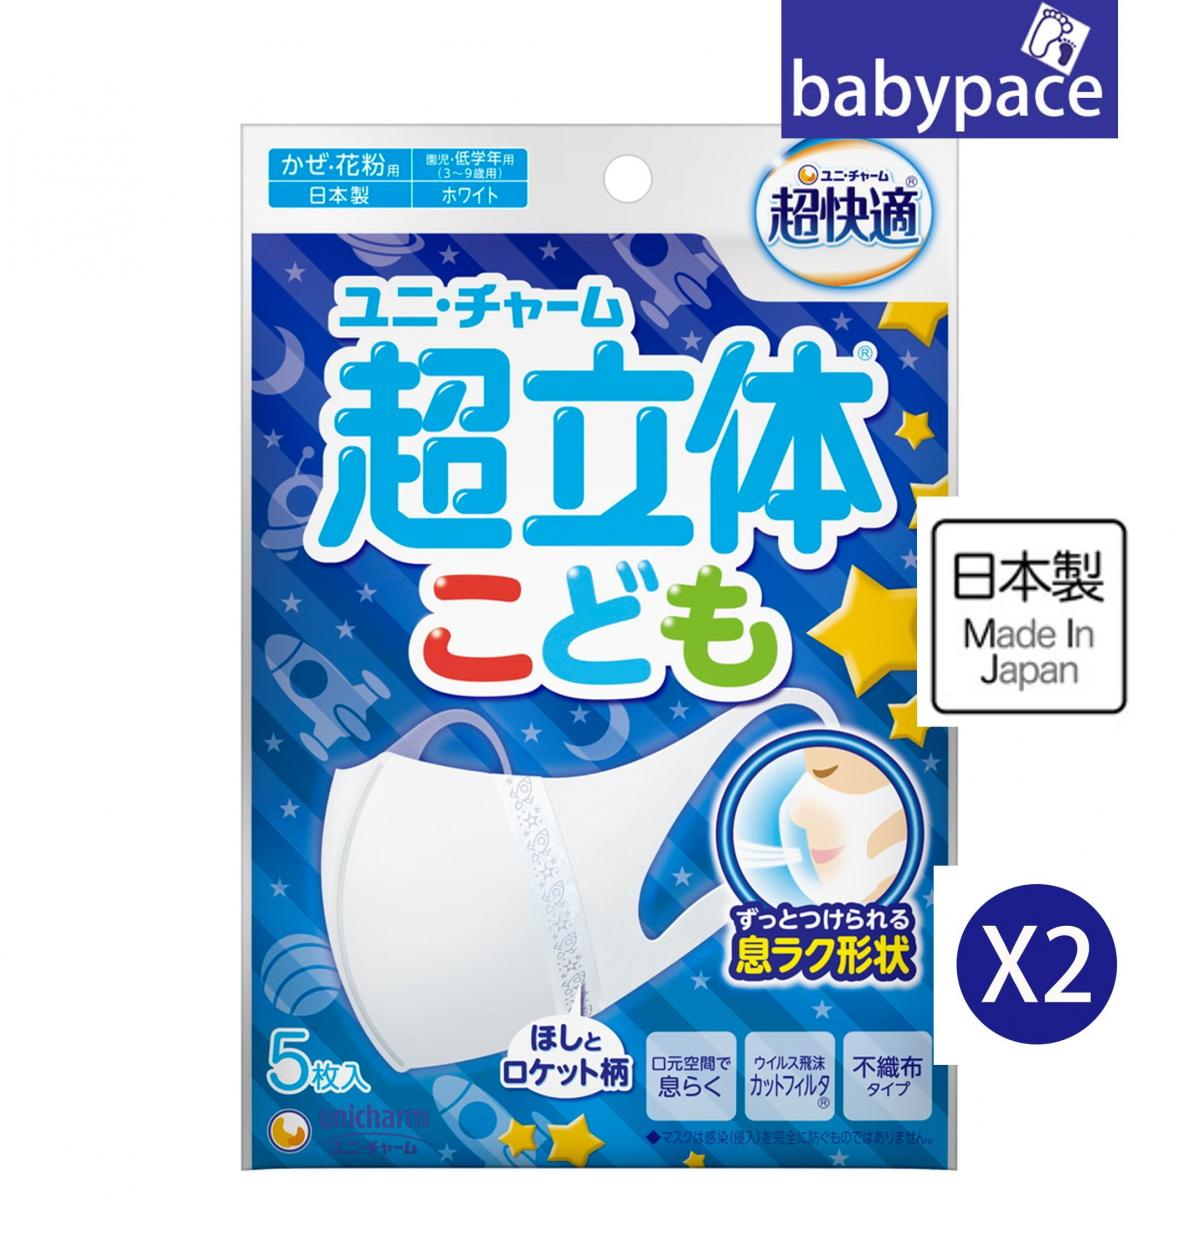 日本製兒童3D超立體口罩(4歲以上)(VFE>99%) 5枚(男仔) U 961900 x 2 pack 新舊包裝隨機發送